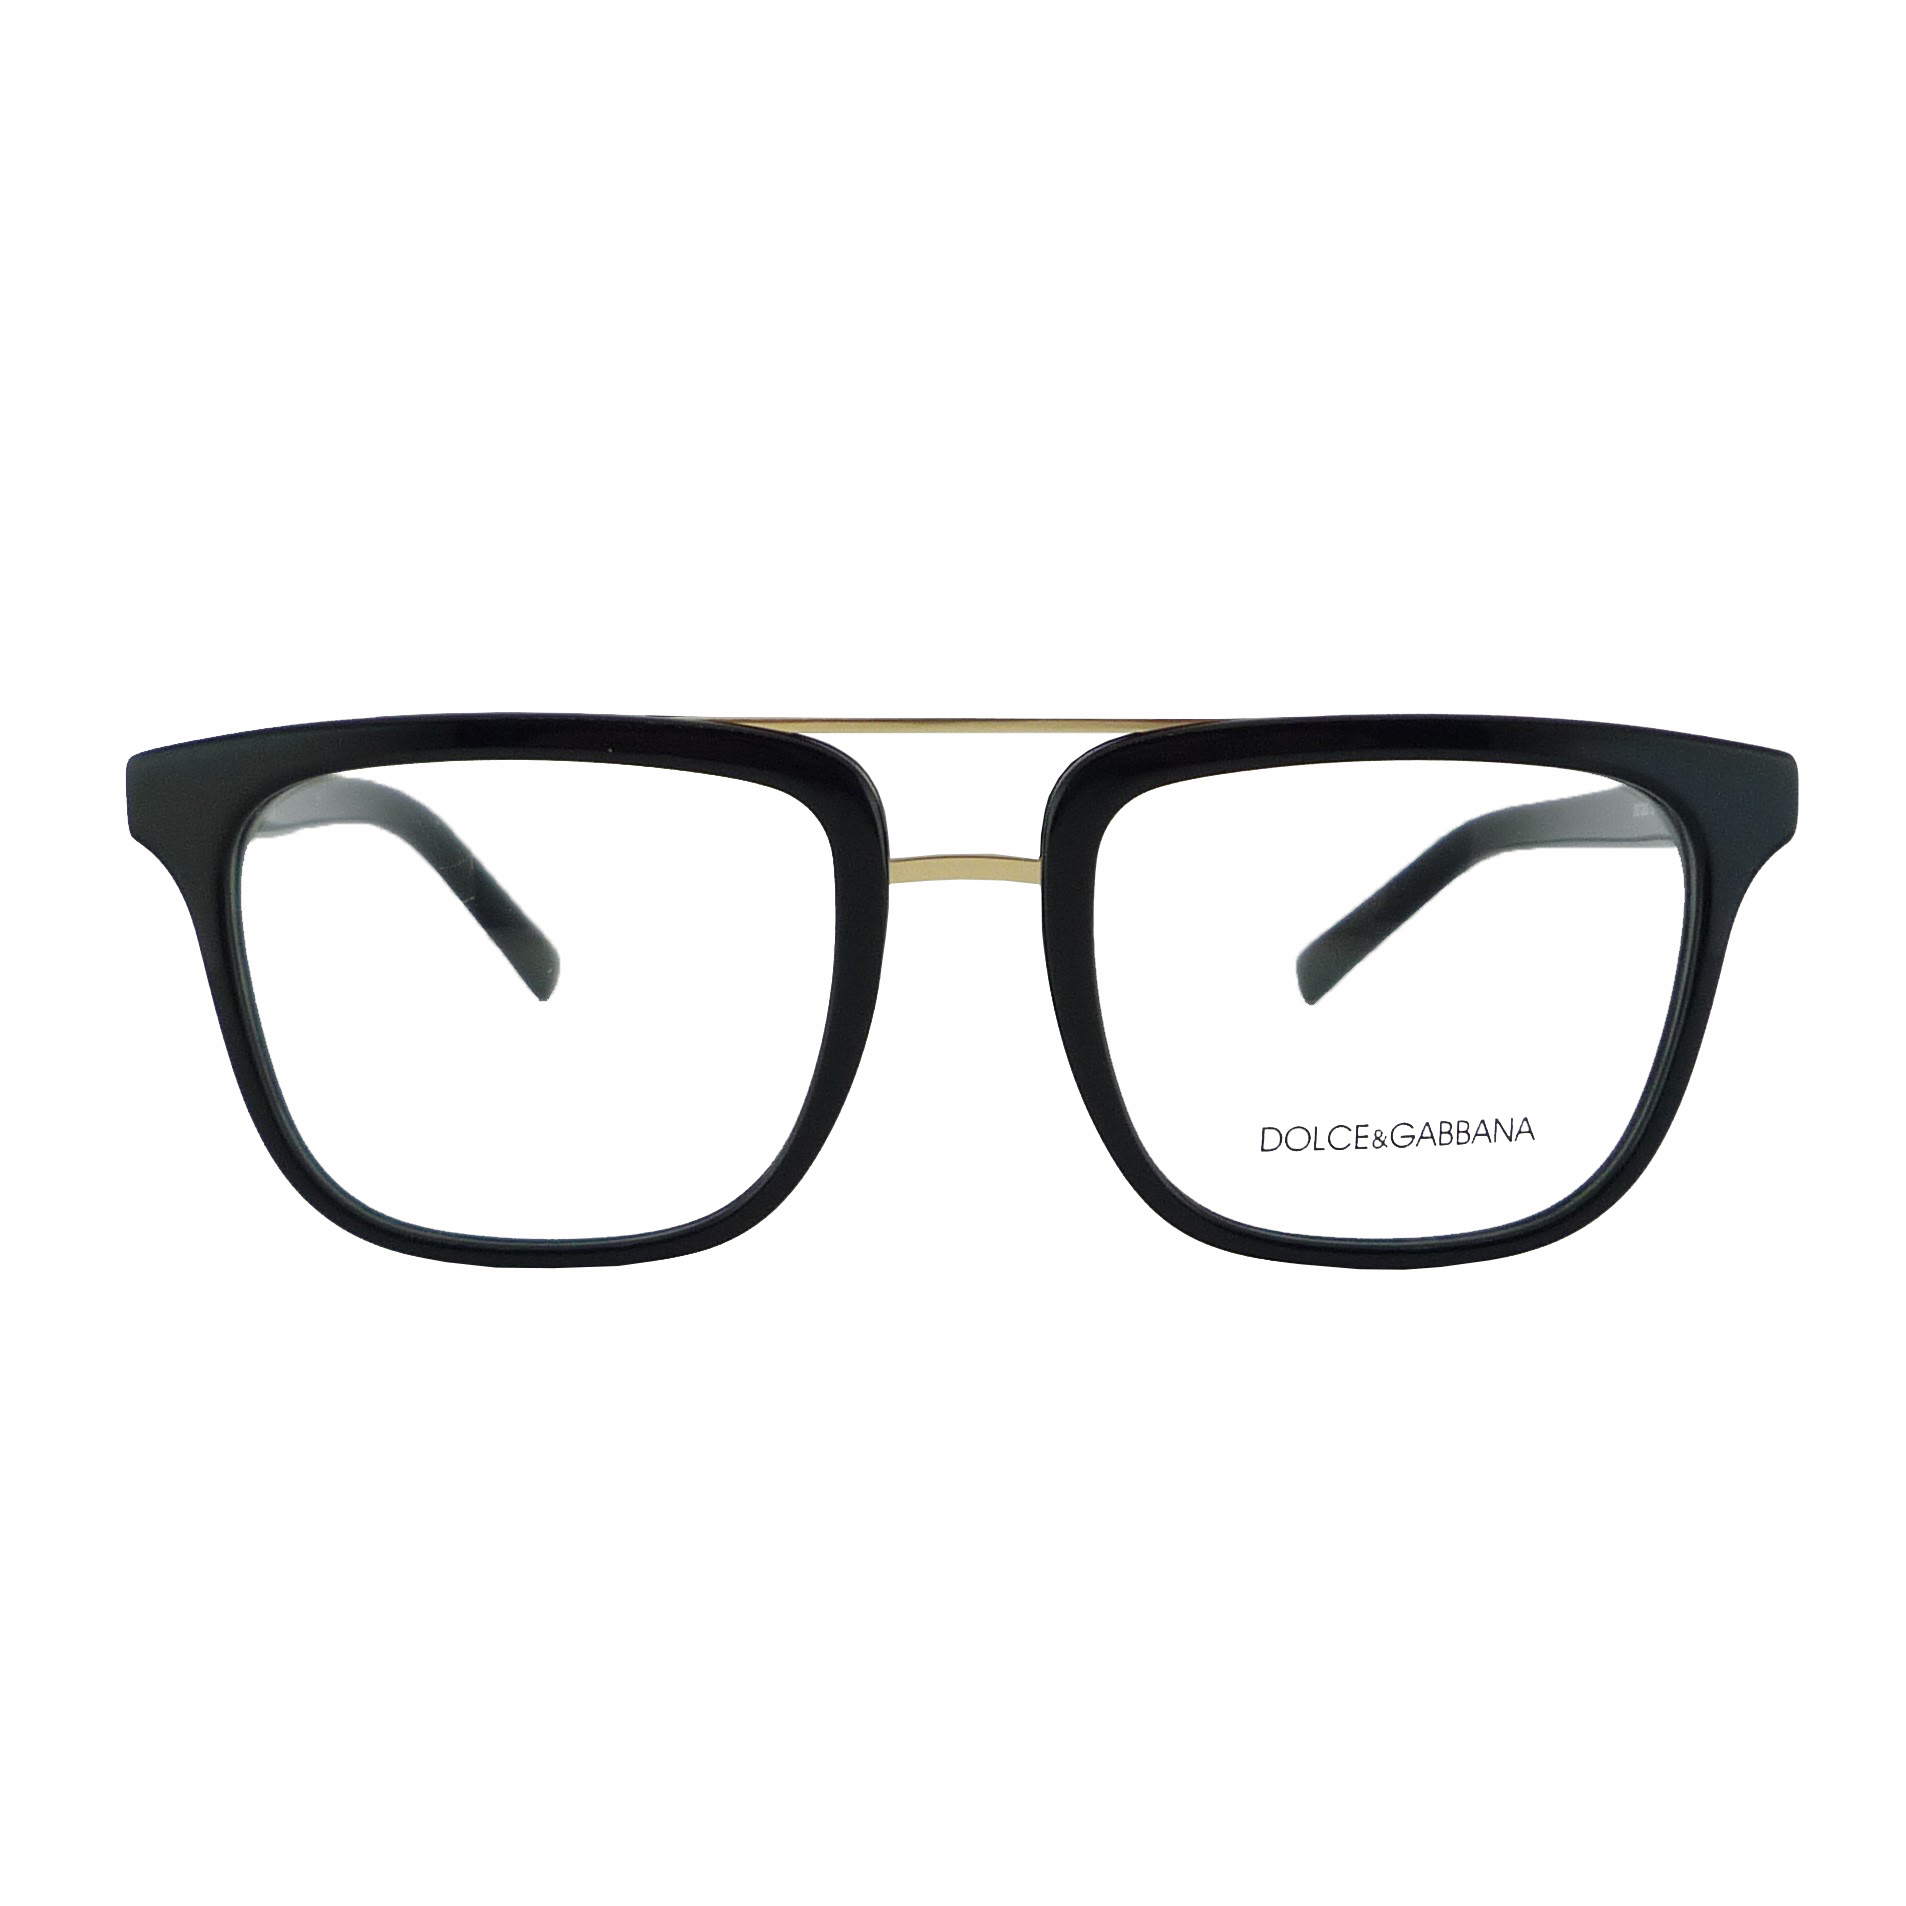 فریم عینک طبی دولچه اند گابانا مدل DG3323-501